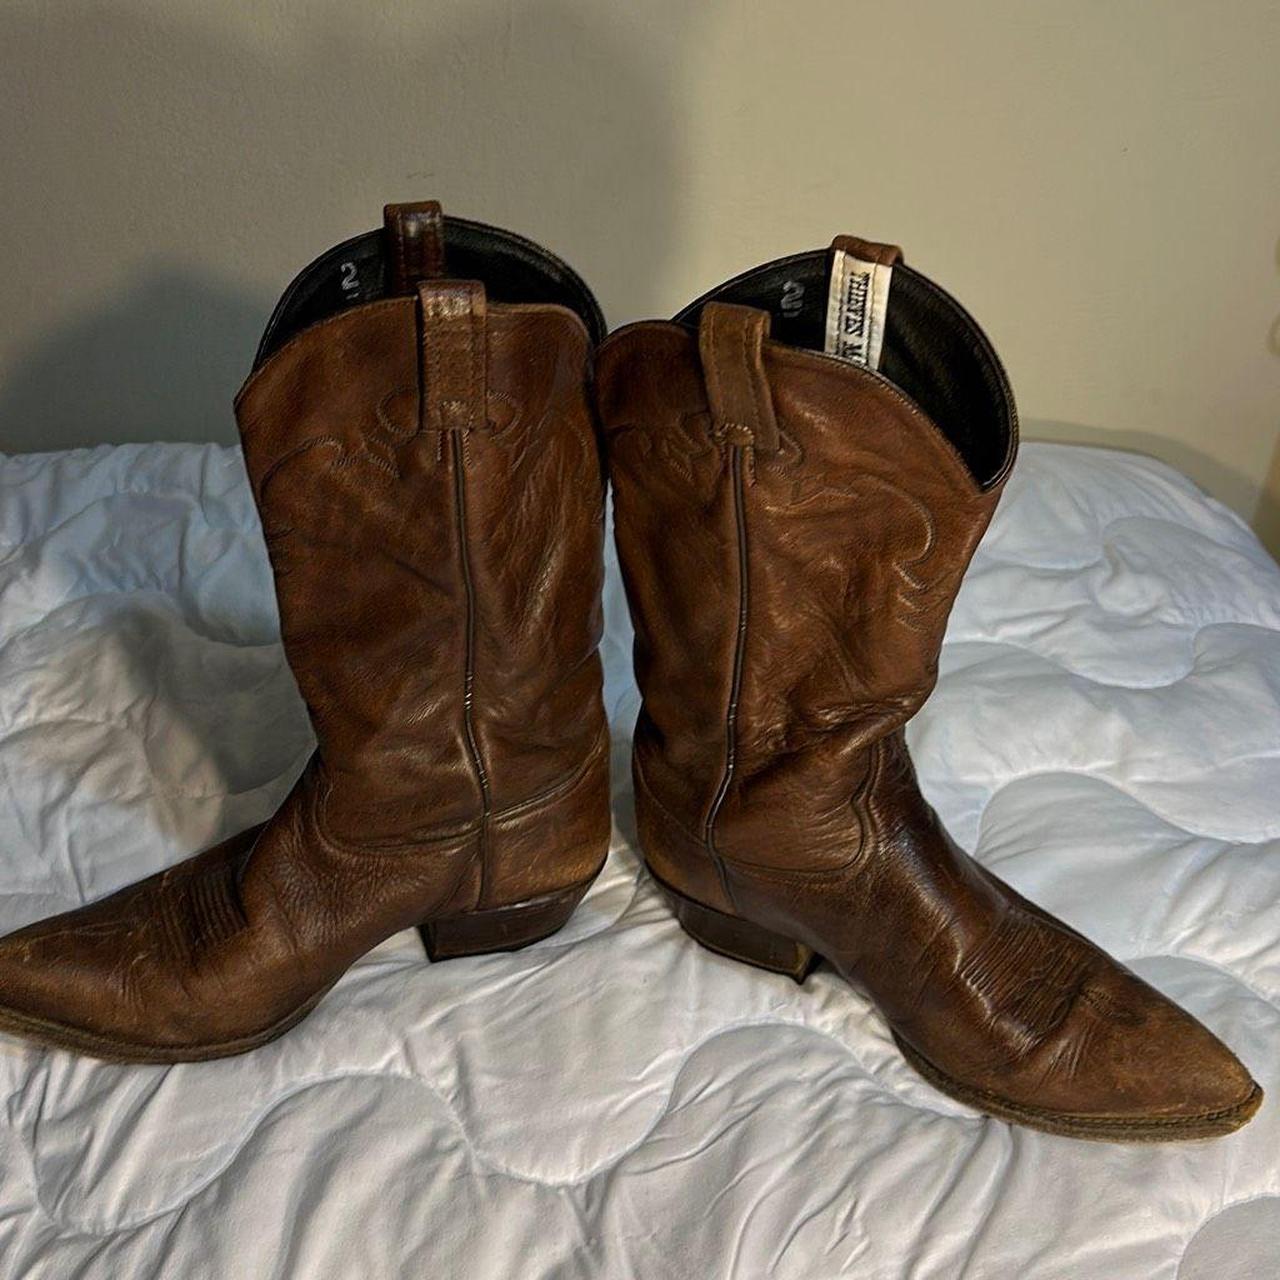 Leather Cowboy Boots Tony Lama Size 11 D Men’s... - Depop